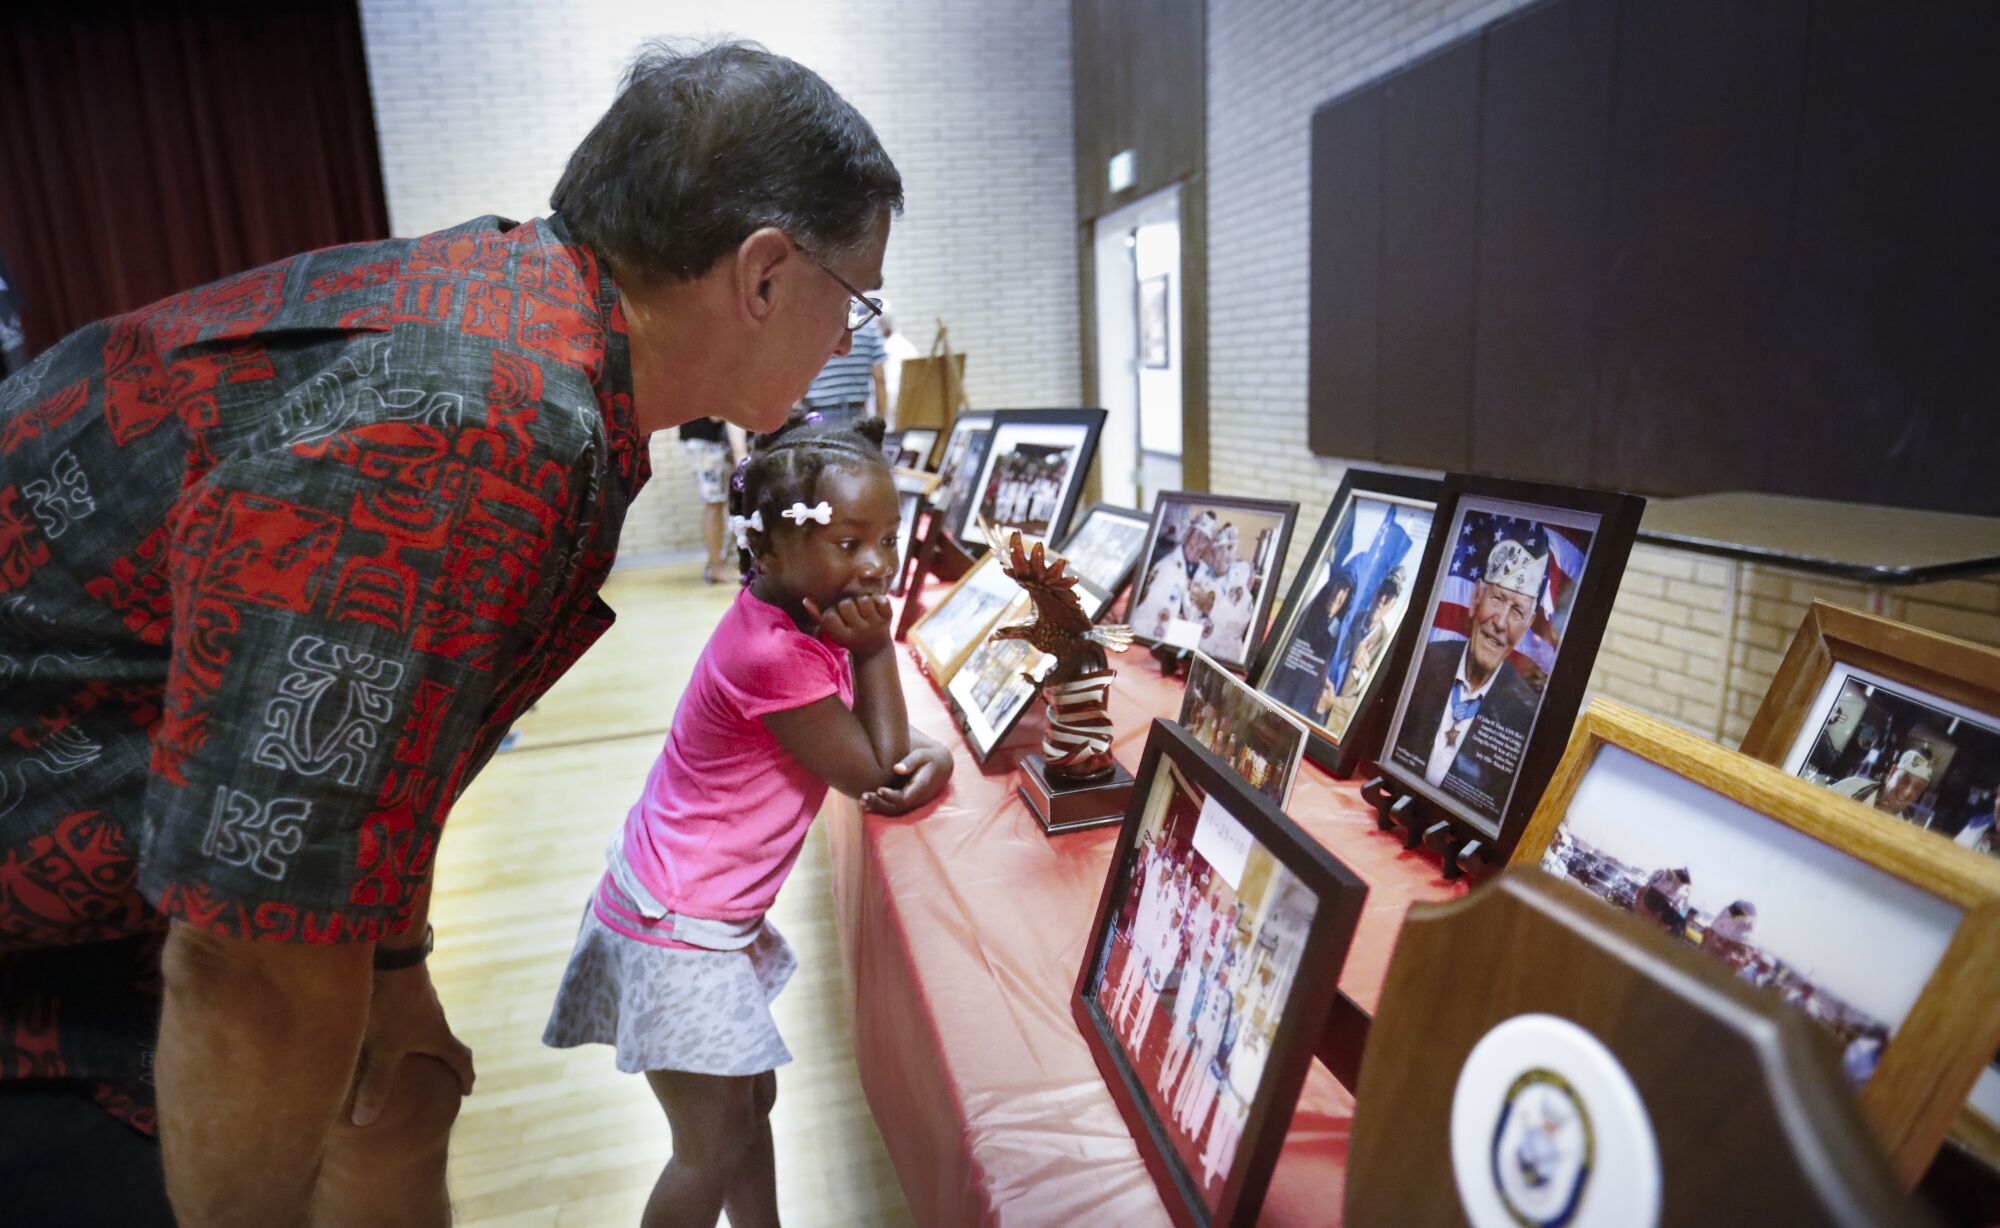 David Ybarra, left, and his 6-year-old daughter, Mia Rose Ybarra, look at Pearl Harbor memorabilia